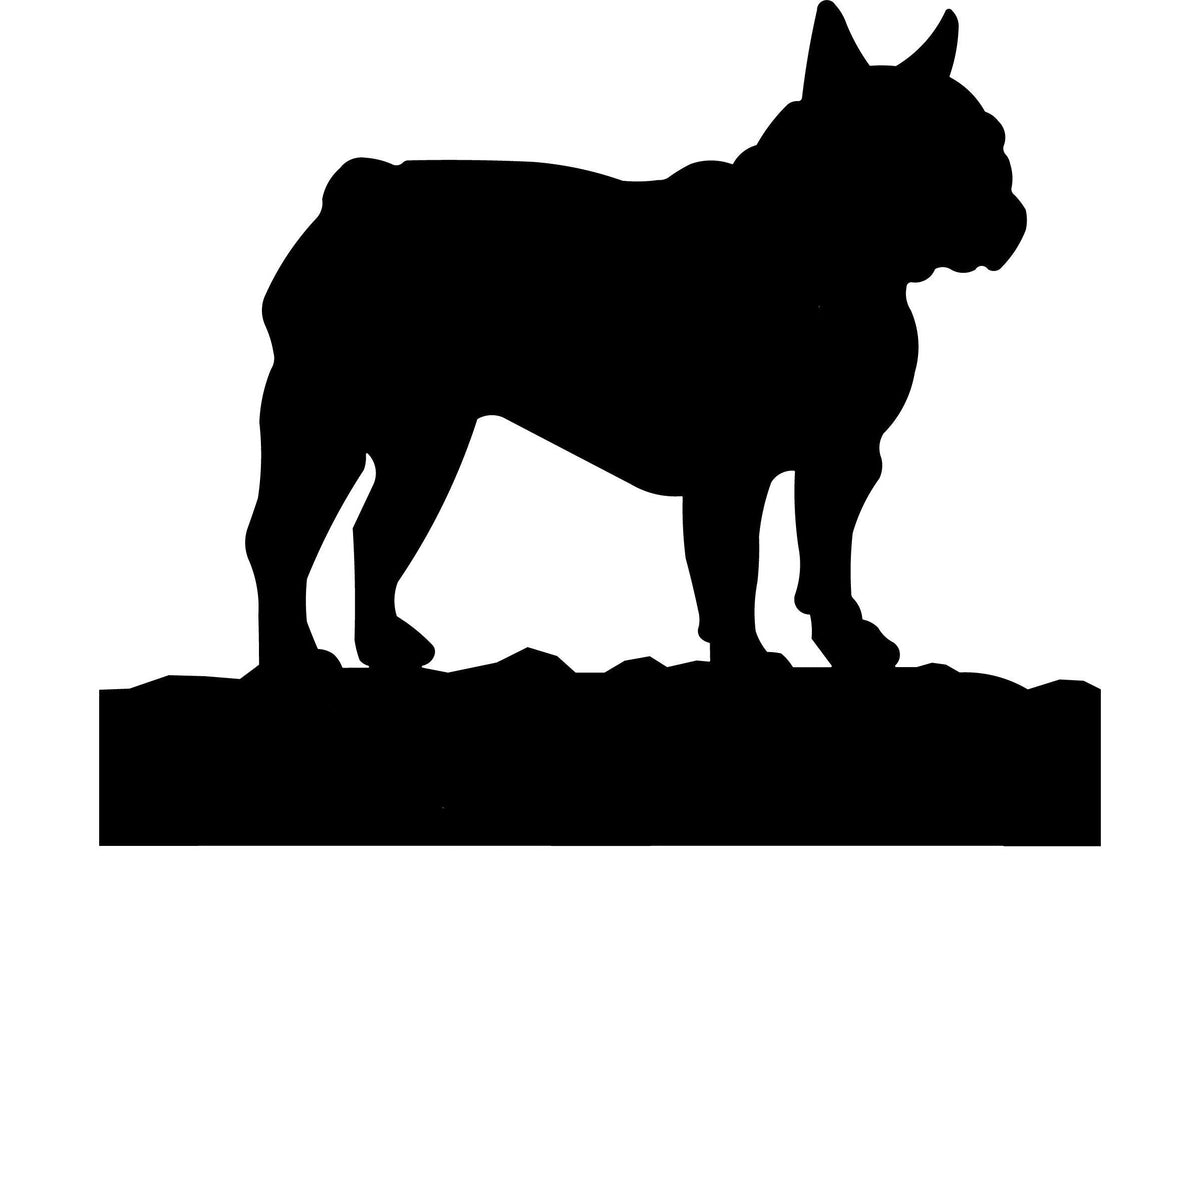 French Bulldog dog address stake